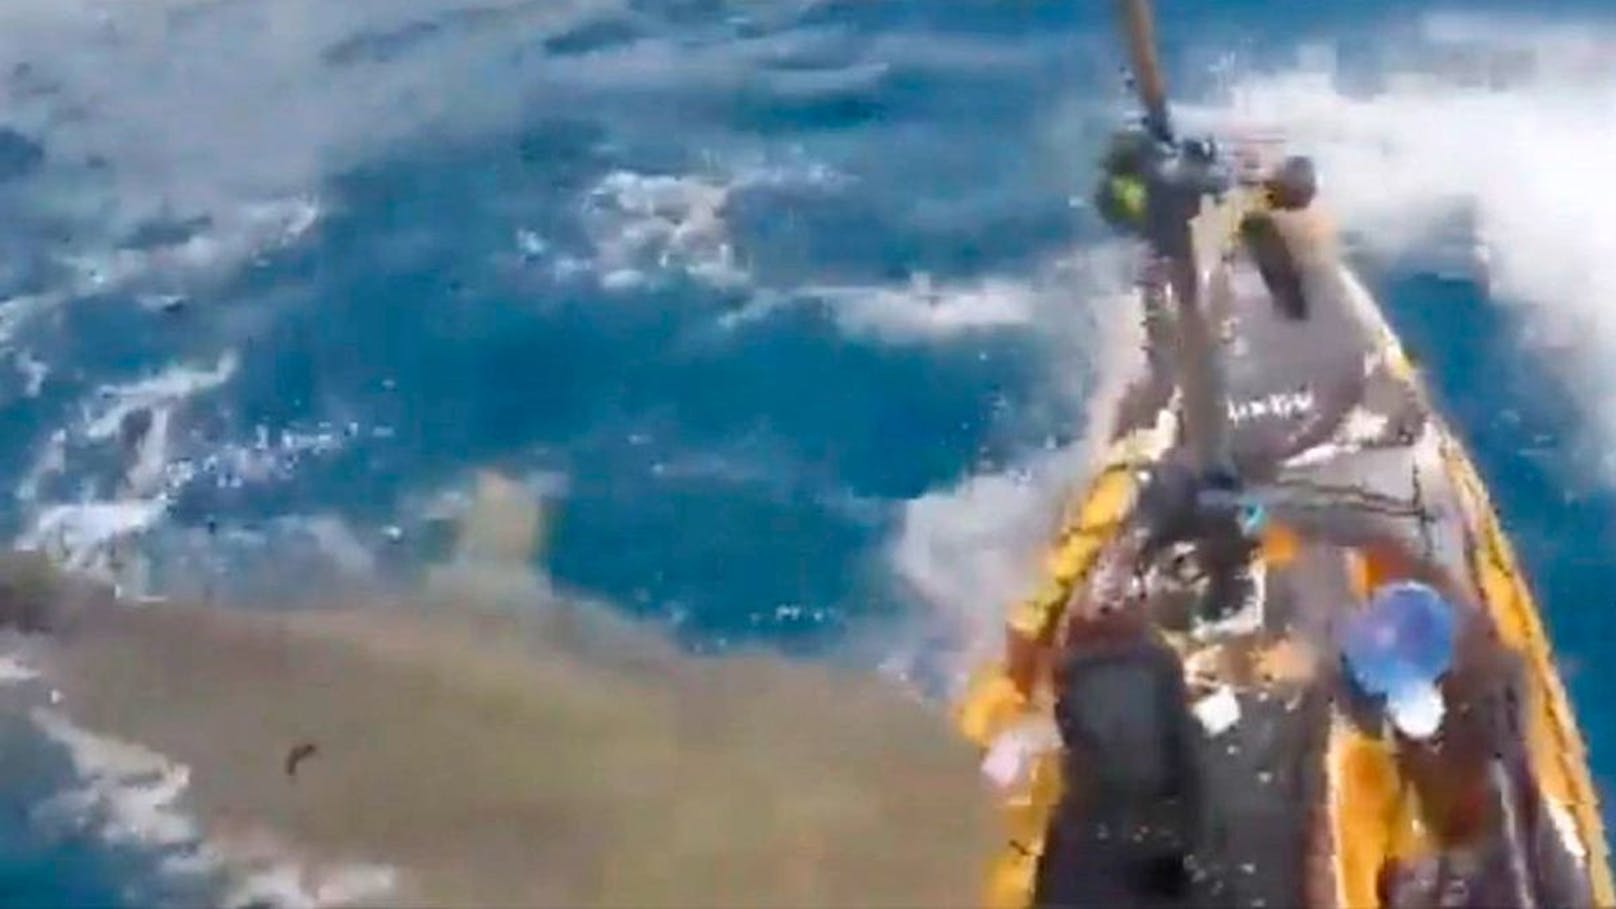 Tigerhai attackierte Kajak-Fahrer aus dem Nichts